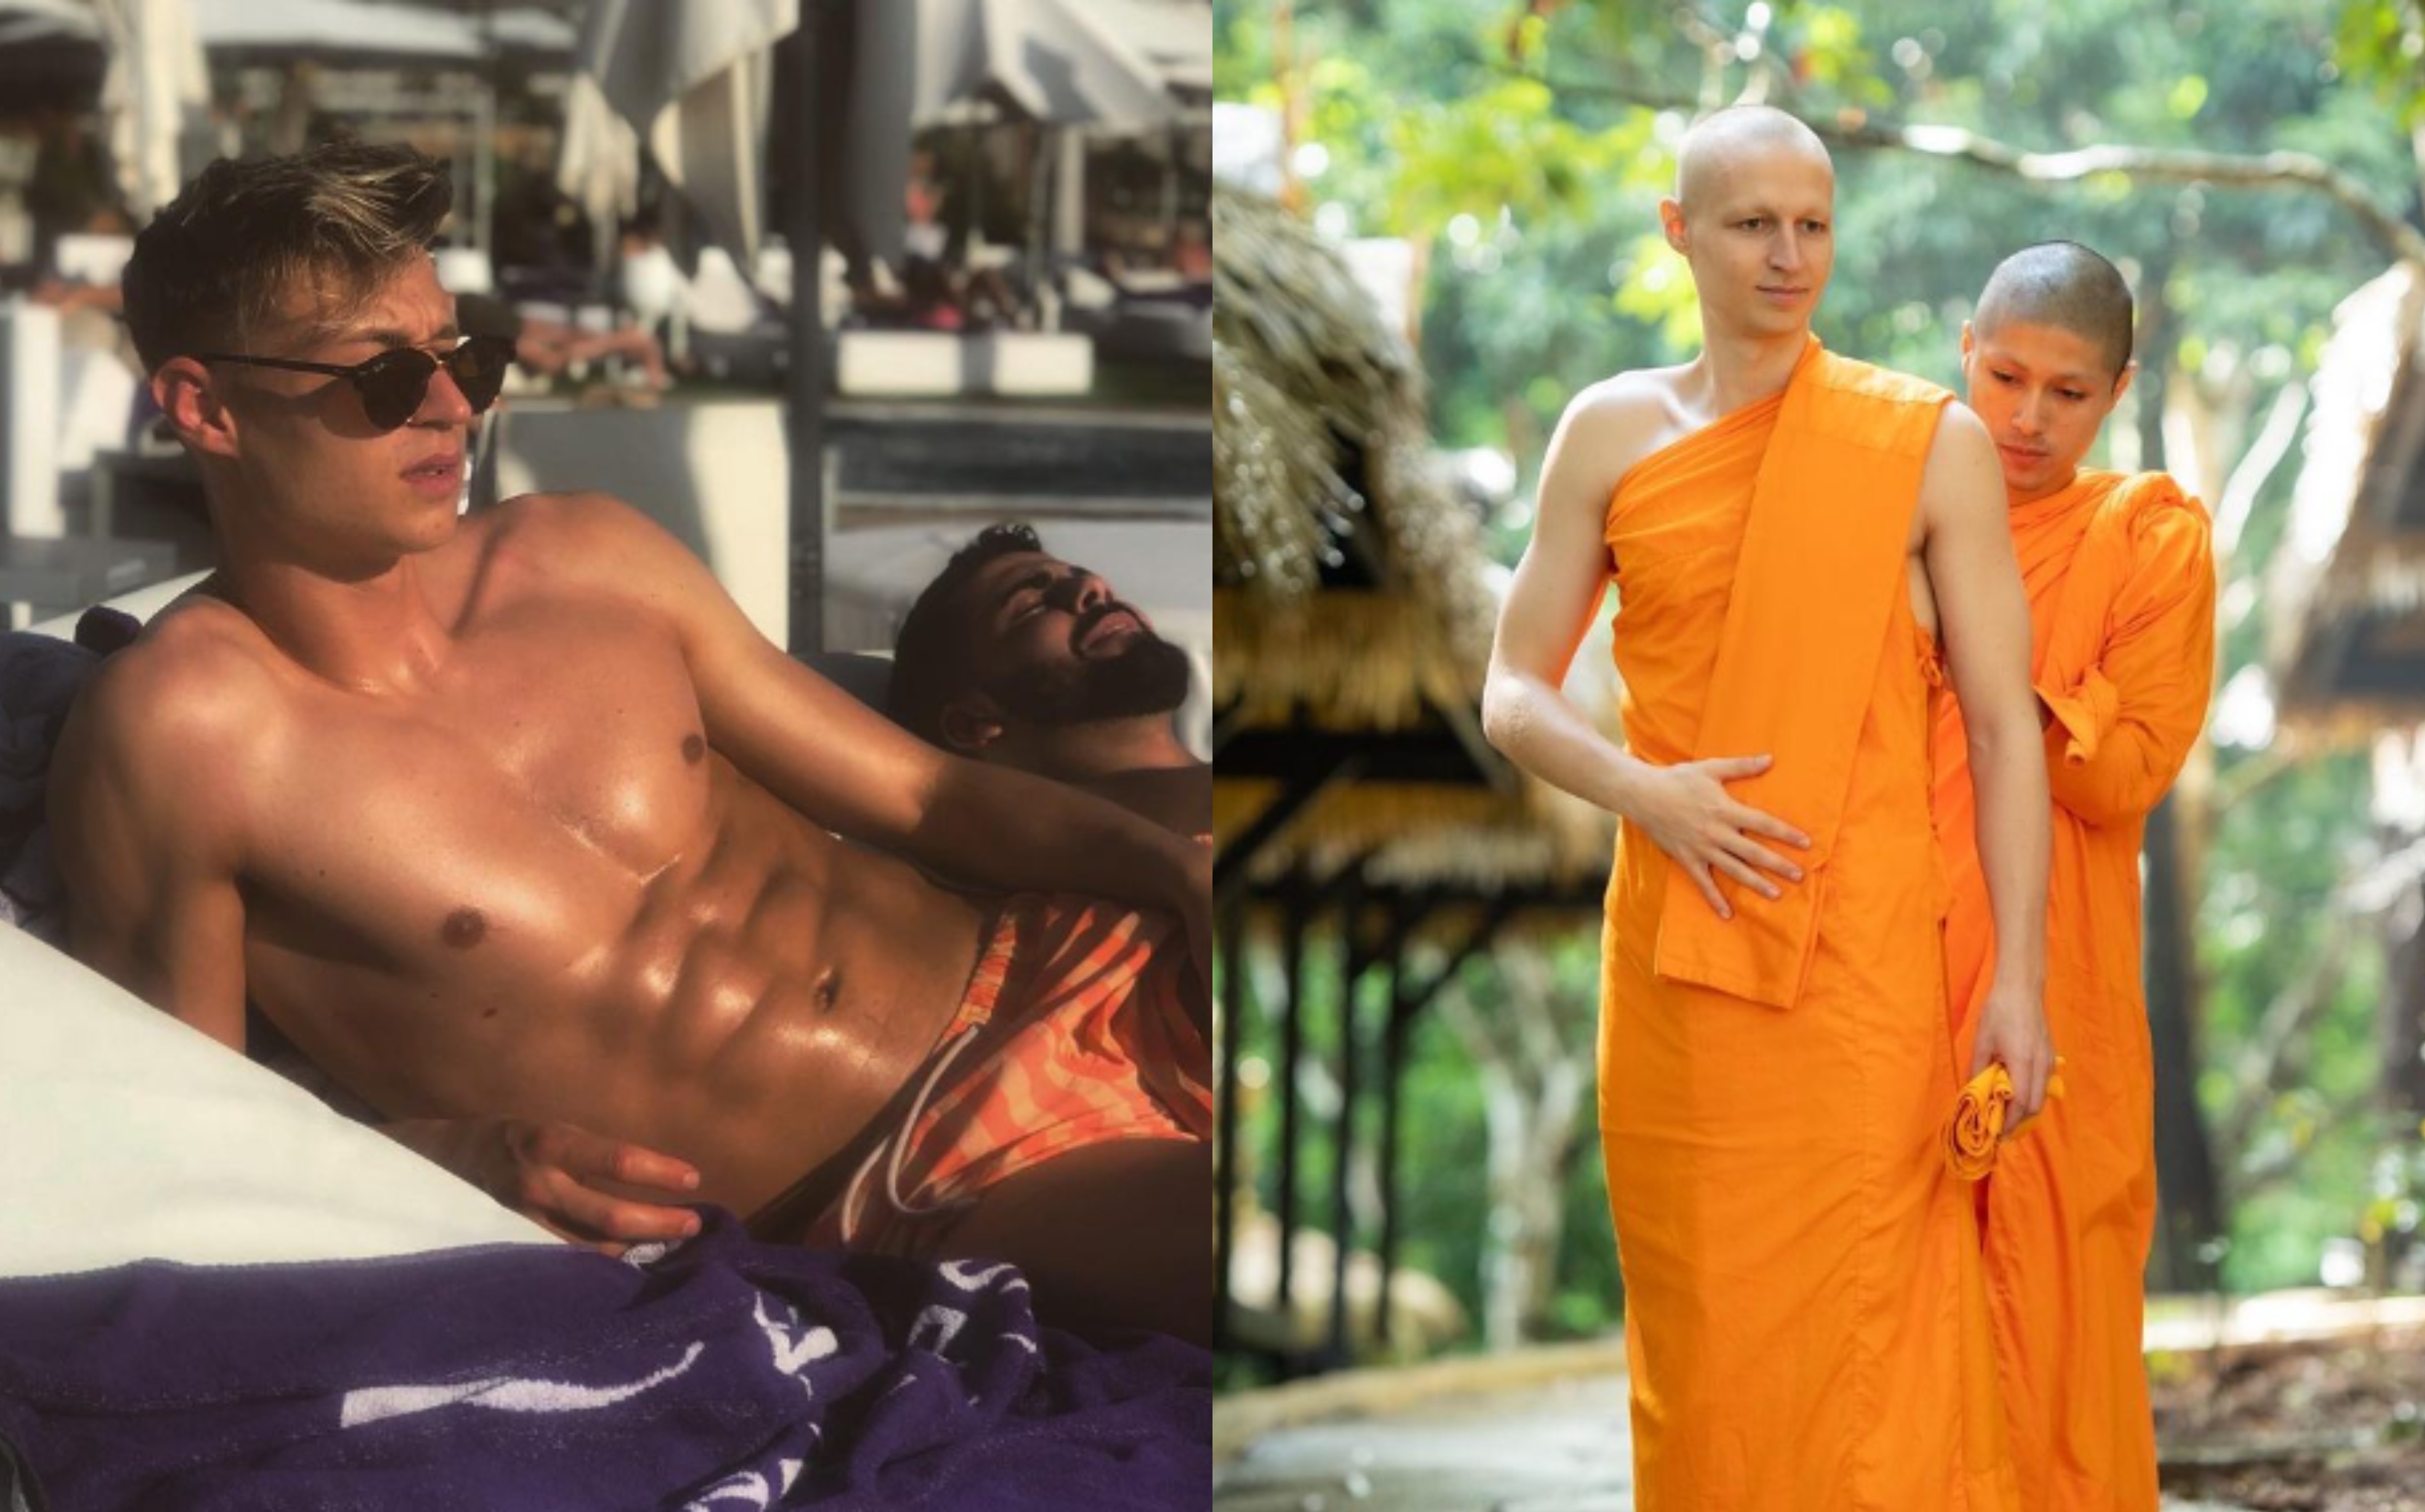 Total surprinzător! A renunțat la fotbal la 24 de ani și a devenit călugăr budist: ”A fost dificil”